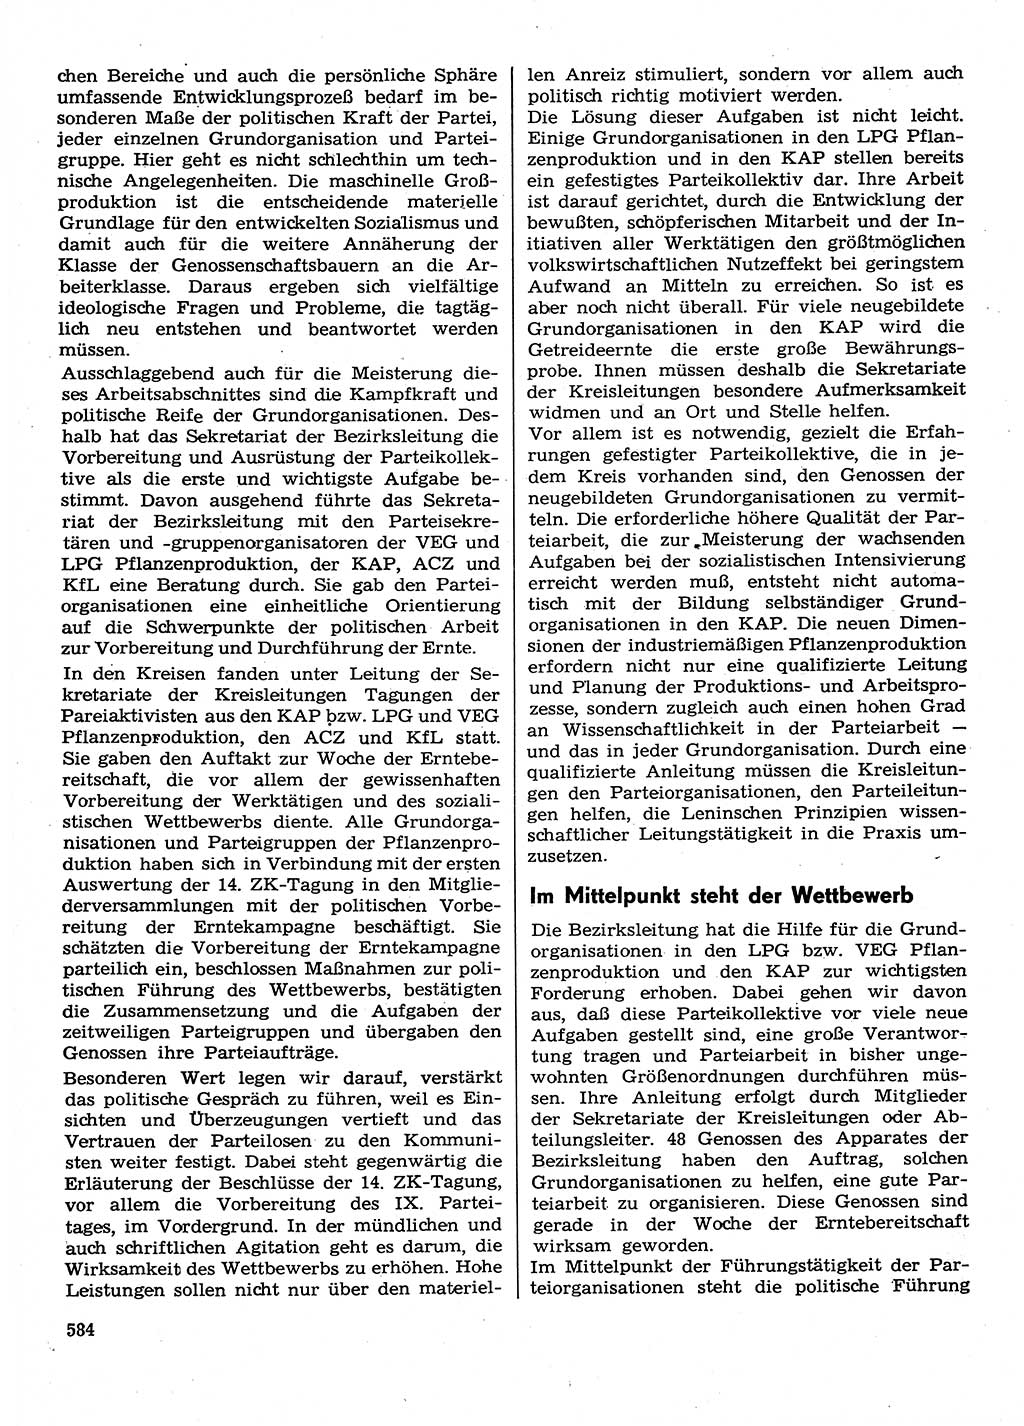 Neuer Weg (NW), Organ des Zentralkomitees (ZK) der SED (Sozialistische Einheitspartei Deutschlands) für Fragen des Parteilebens, 30. Jahrgang [Deutsche Demokratische Republik (DDR)] 1975, Seite 584 (NW ZK SED DDR 1975, S. 584)